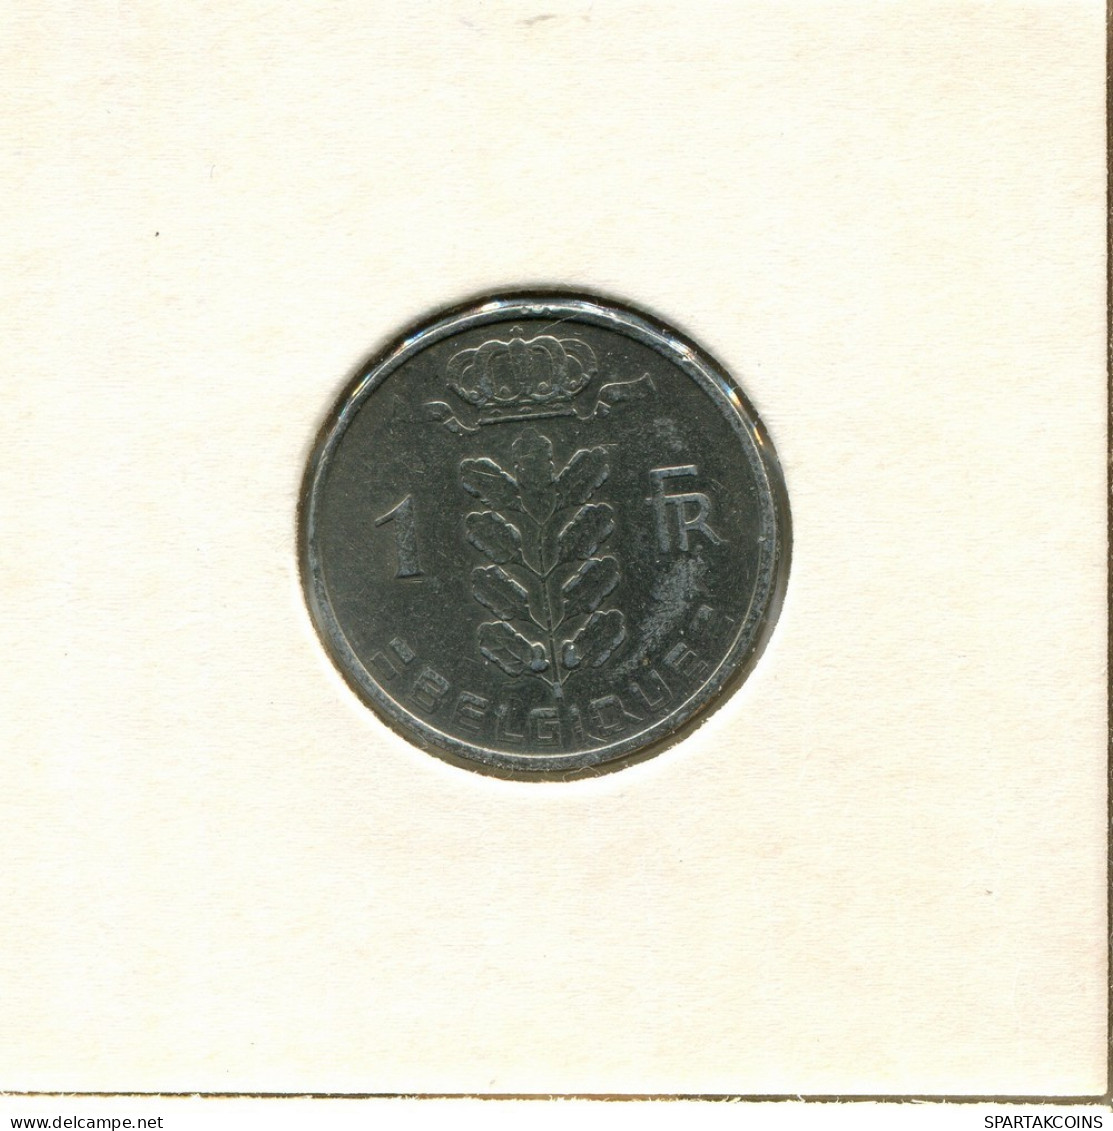 1 FRANC 1963 Französisch Text BELGIEN BELGIUM Münze #BB300.D.A - 1 Franc